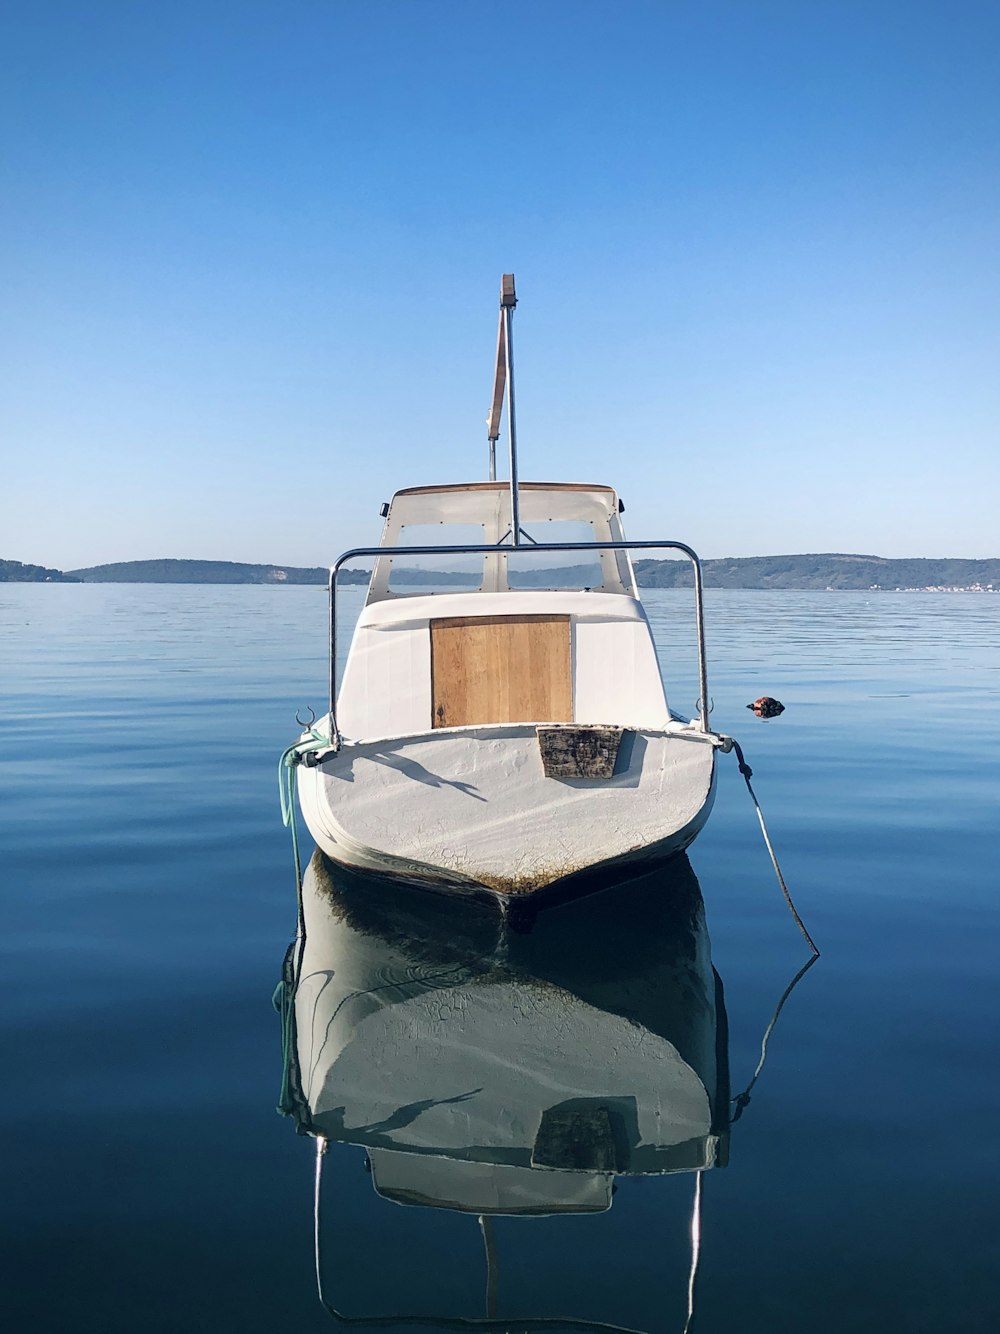 barca bianca e blu sull'acqua durante il giorno